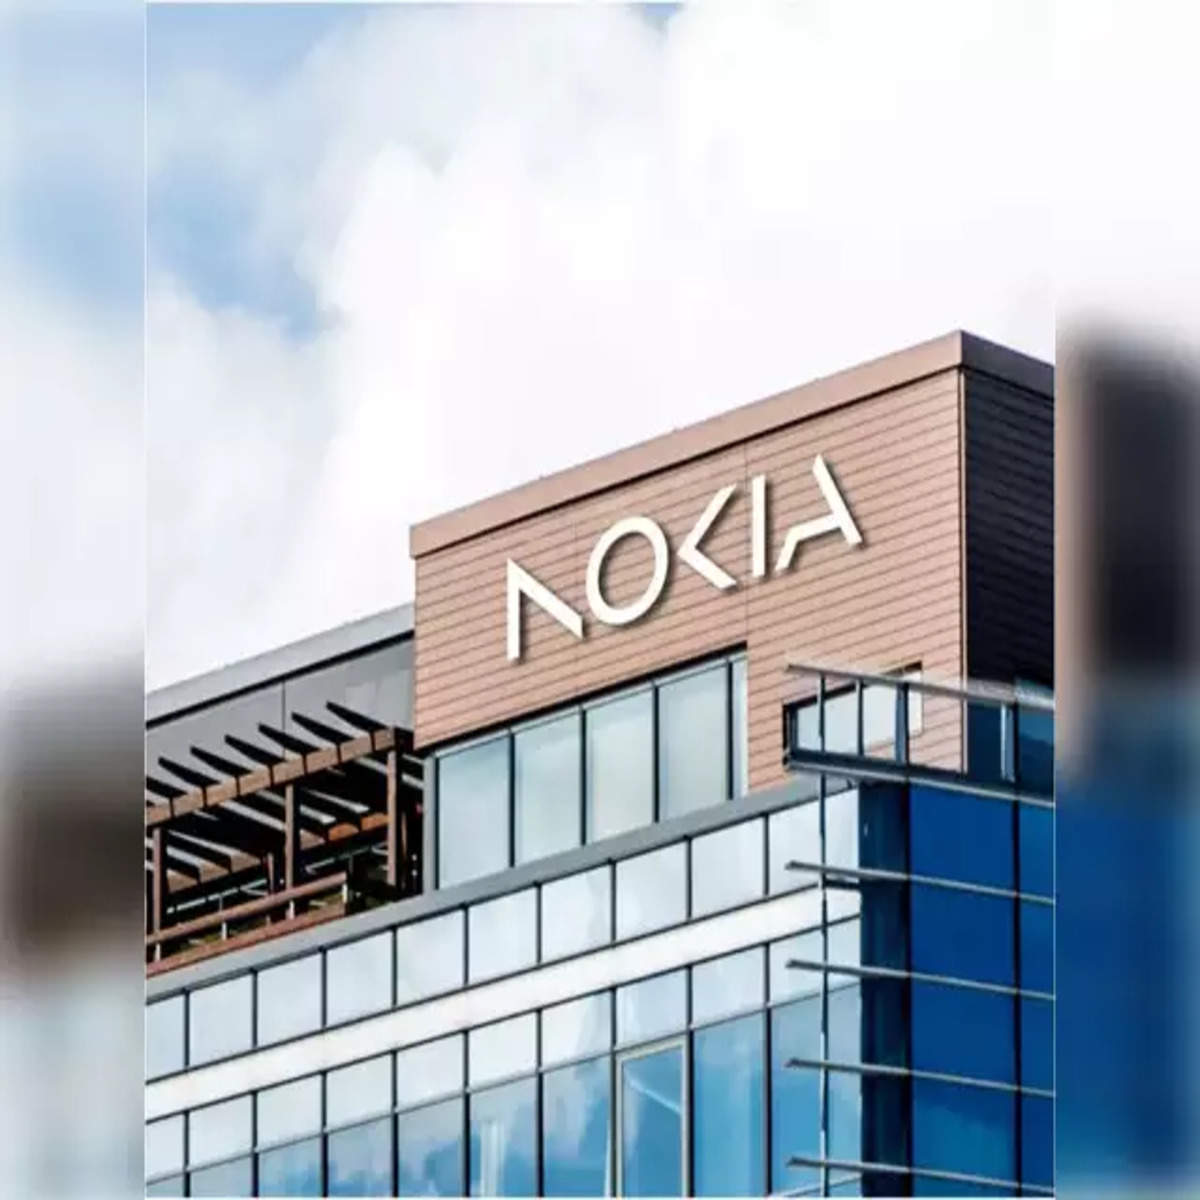 Nokia-phone-maker.